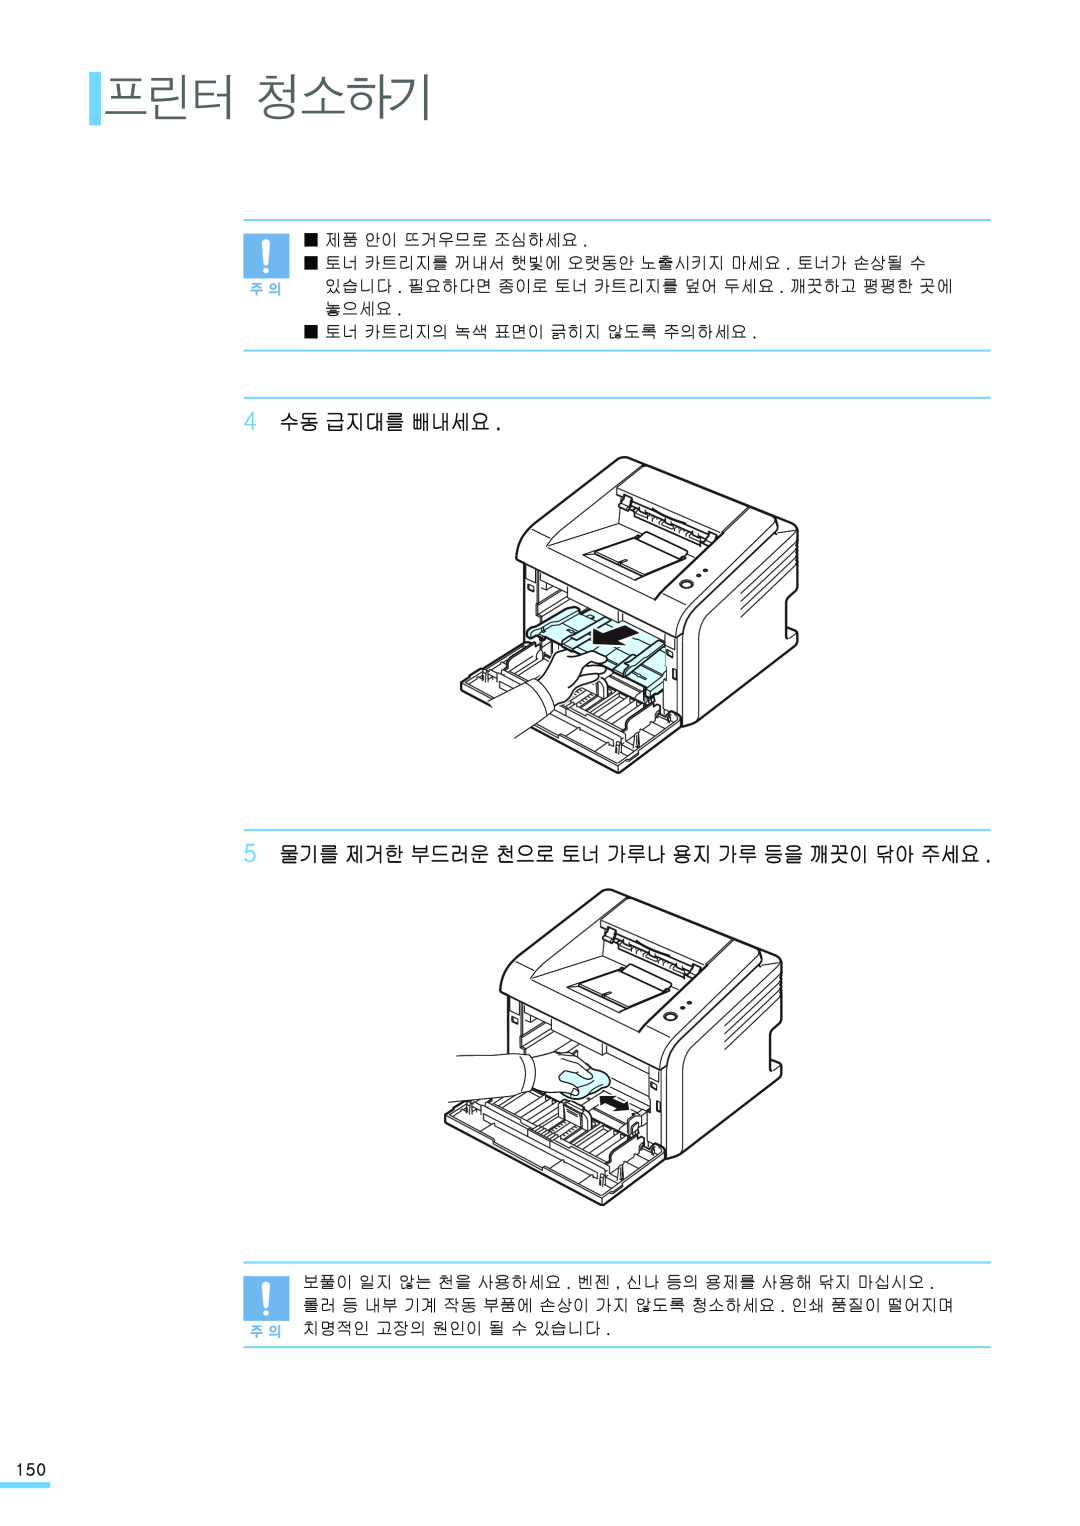 Samsung ML-2571N manual 프린터 청소하기, 4 수동 급지대를 빼내세요 5 물기를 제거한 부드러운 천으로 토너 가루나 용지 가루 등을 깨끗이 닦아 주세요 